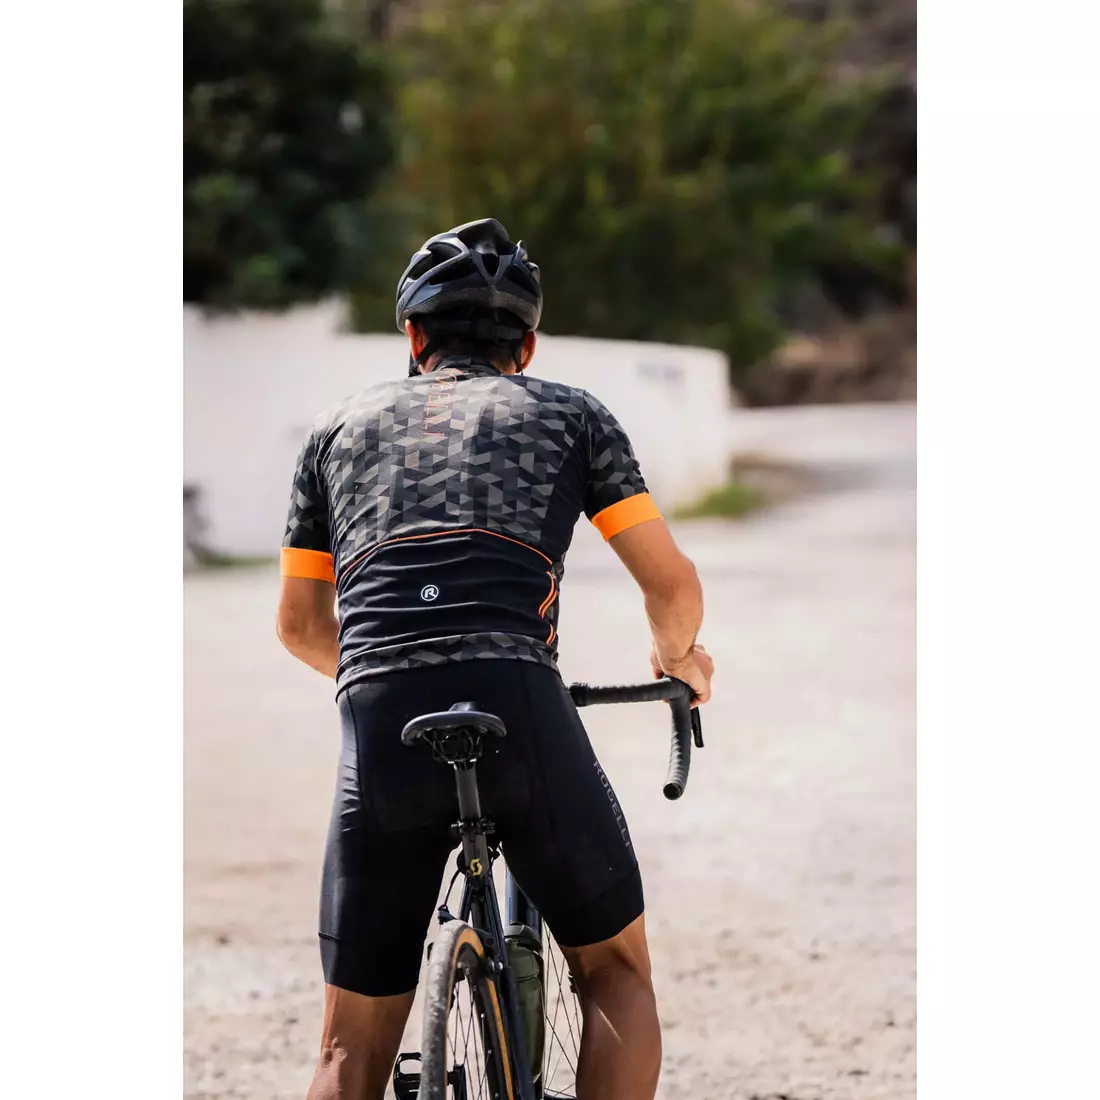 Rogelli RUBIK męska koszulka rowerowa, khaki-pomarańczowa